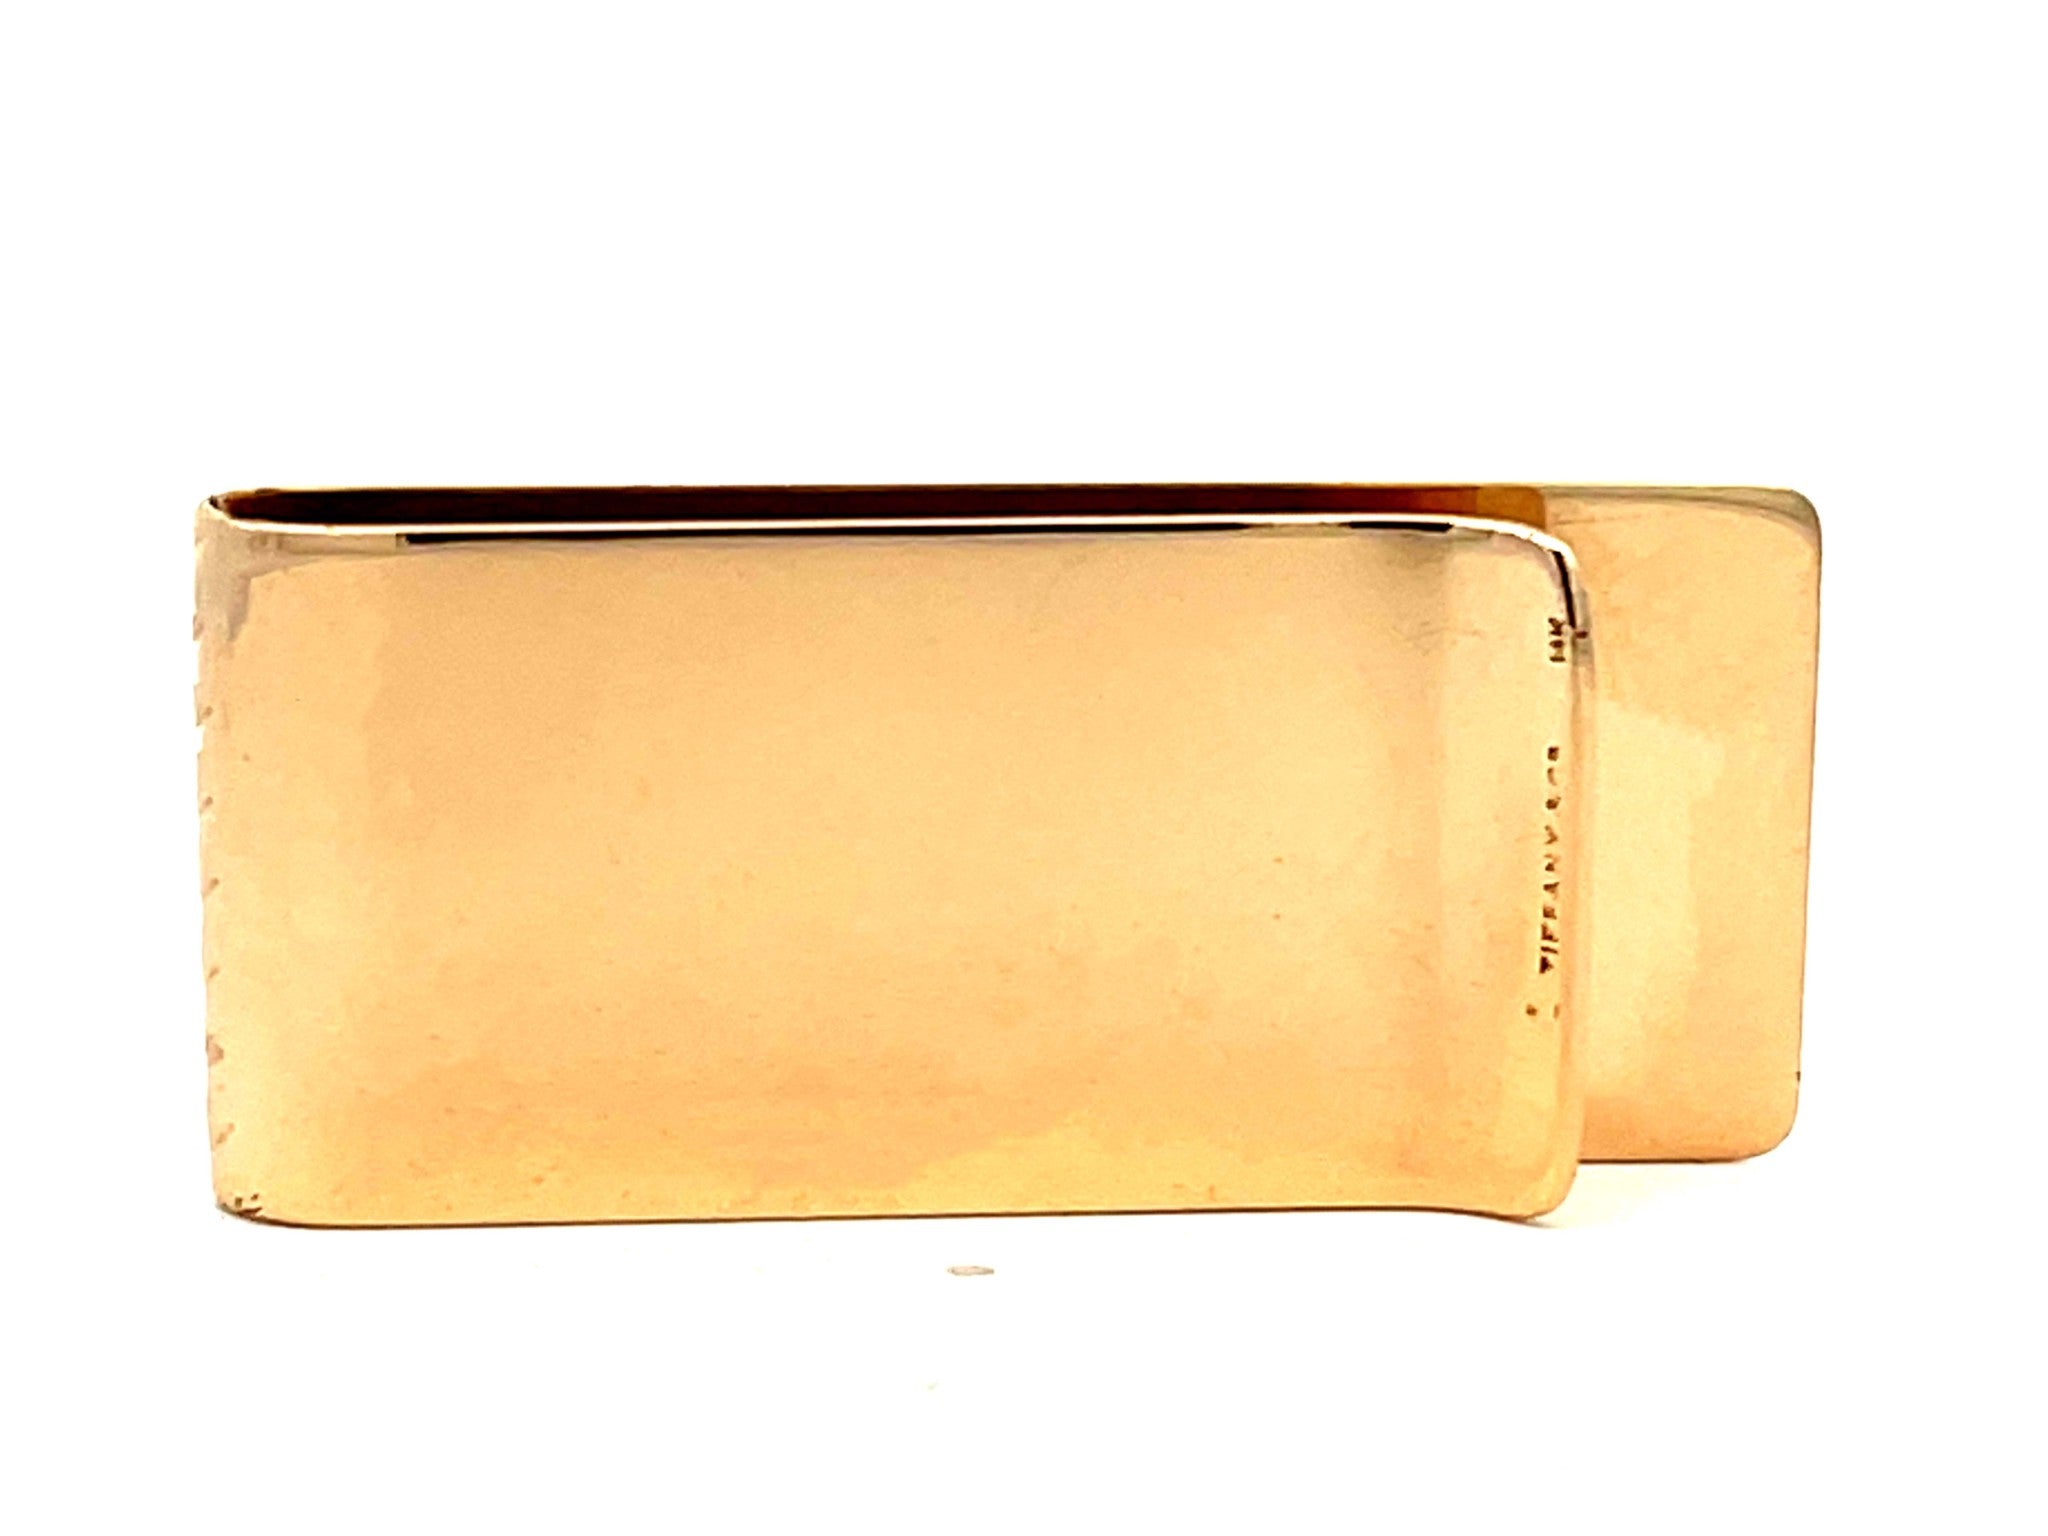 Vintage Tiffany & Co. 14K Solid Gold Fluted Design Money Clip